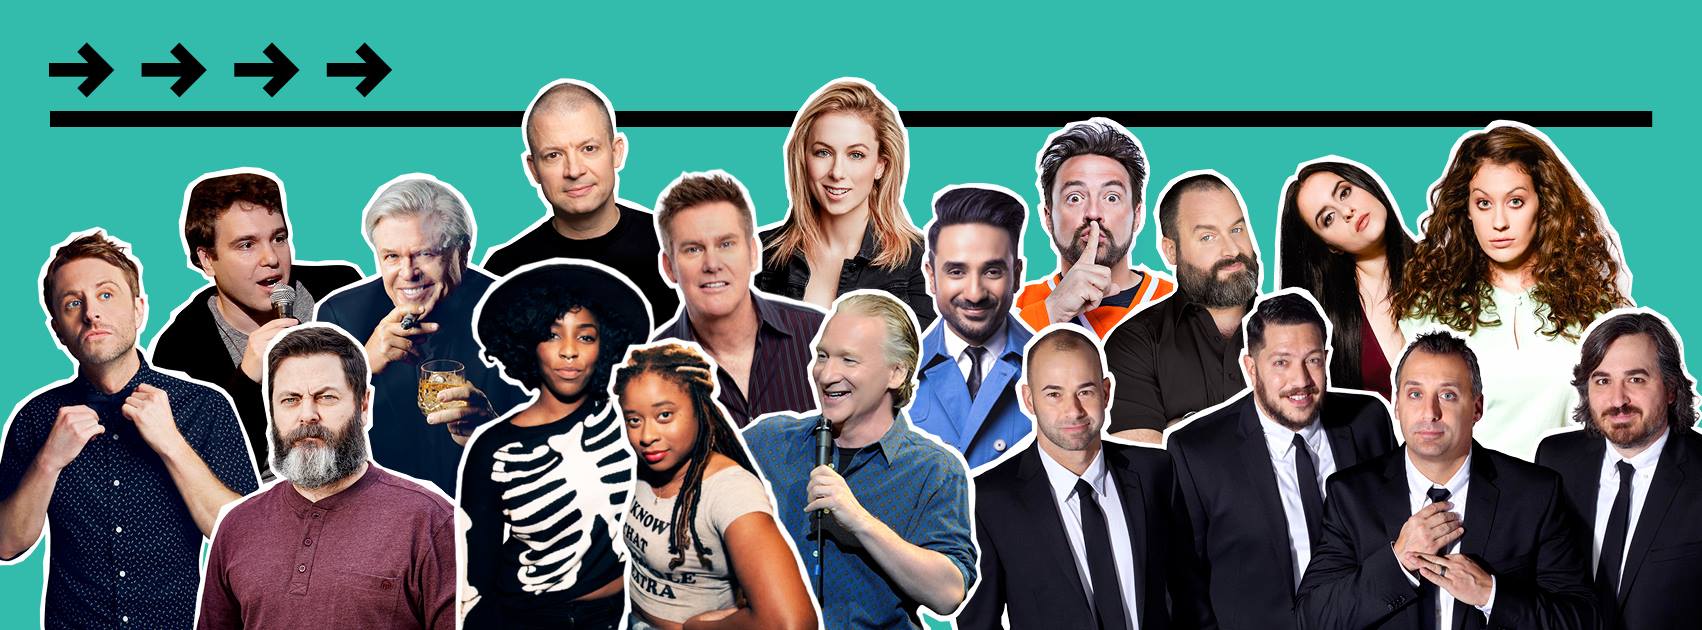 New York Comedy Festival announces 2017 headliners for Nov. 7-12